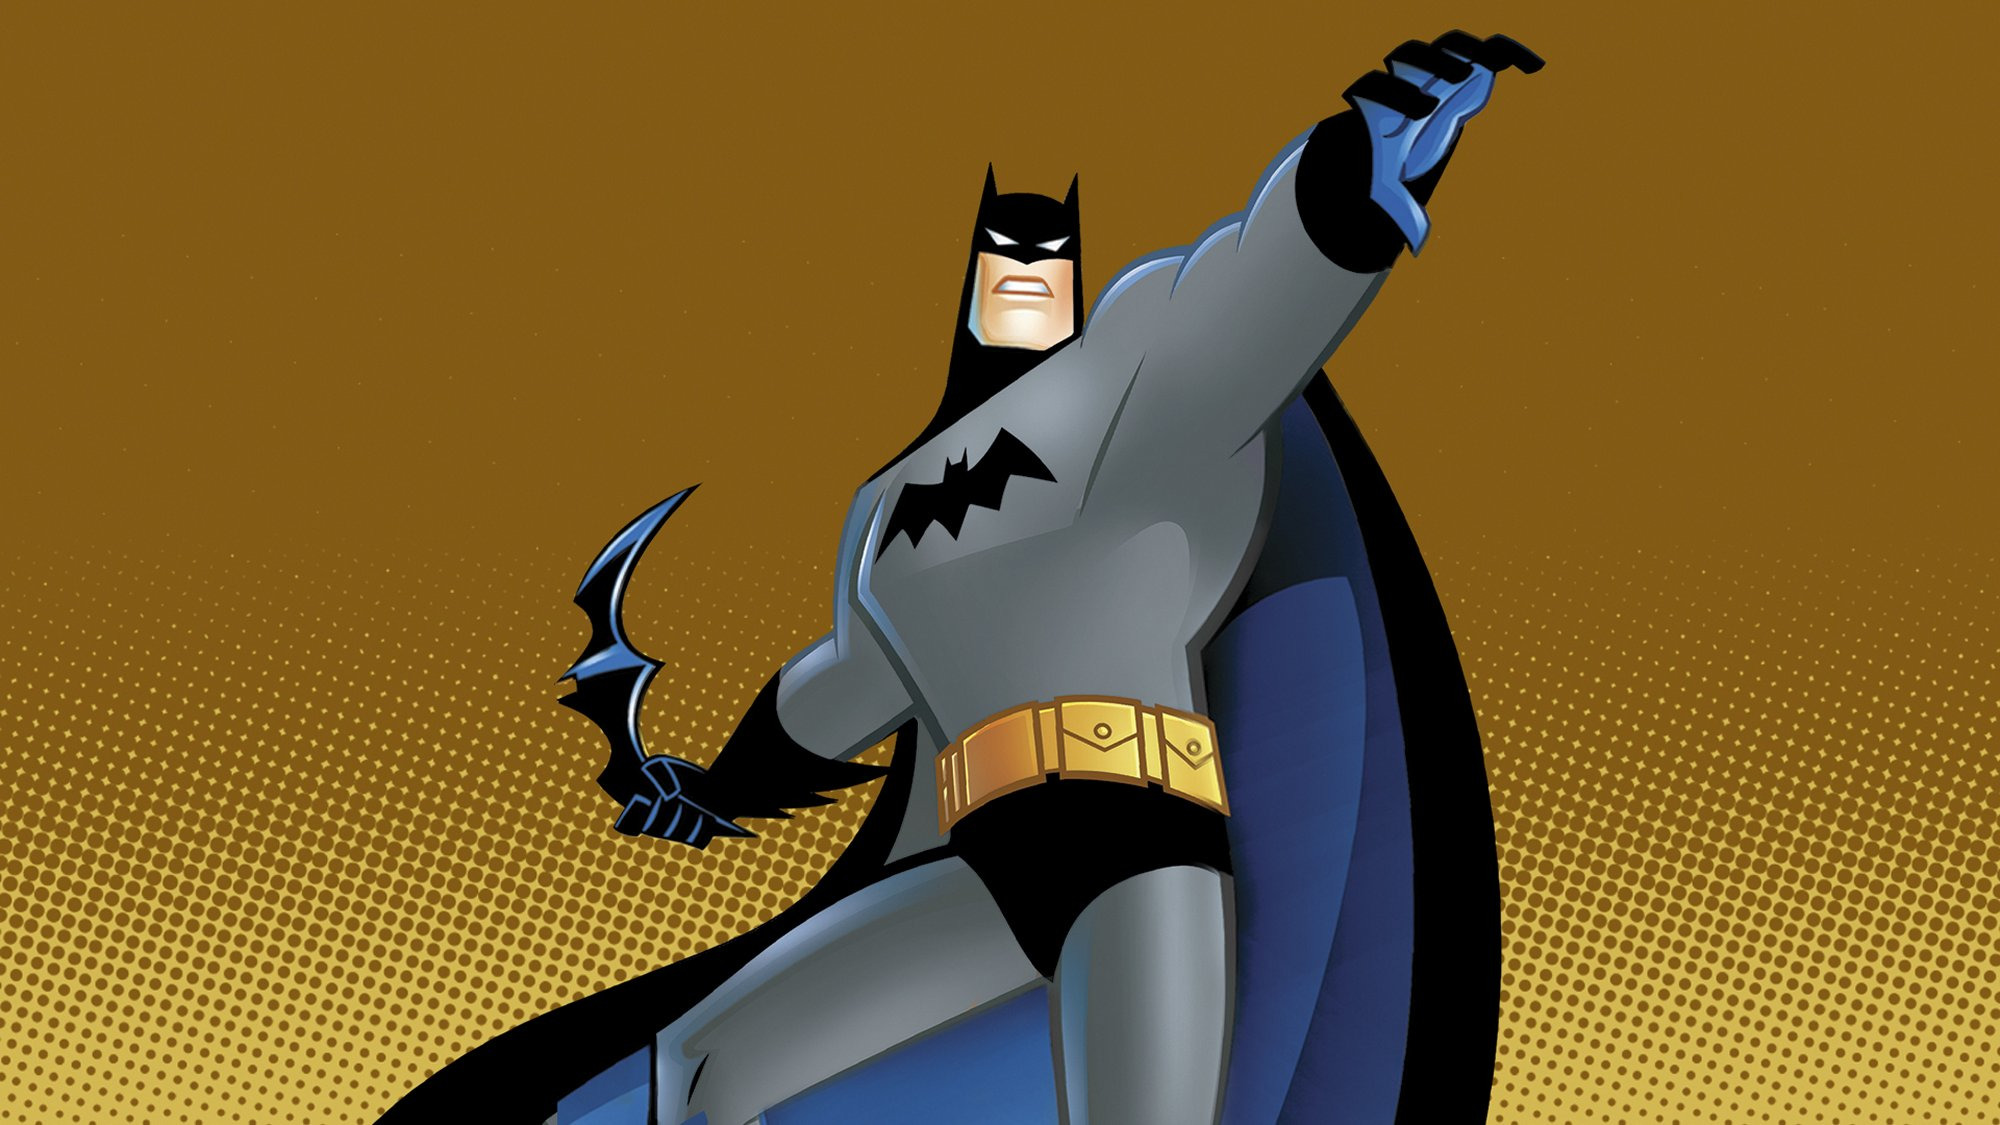 Скачать обои бесплатно Телешоу, Бэтмен, Брюс Уэйн картинка на рабочий стол ПК